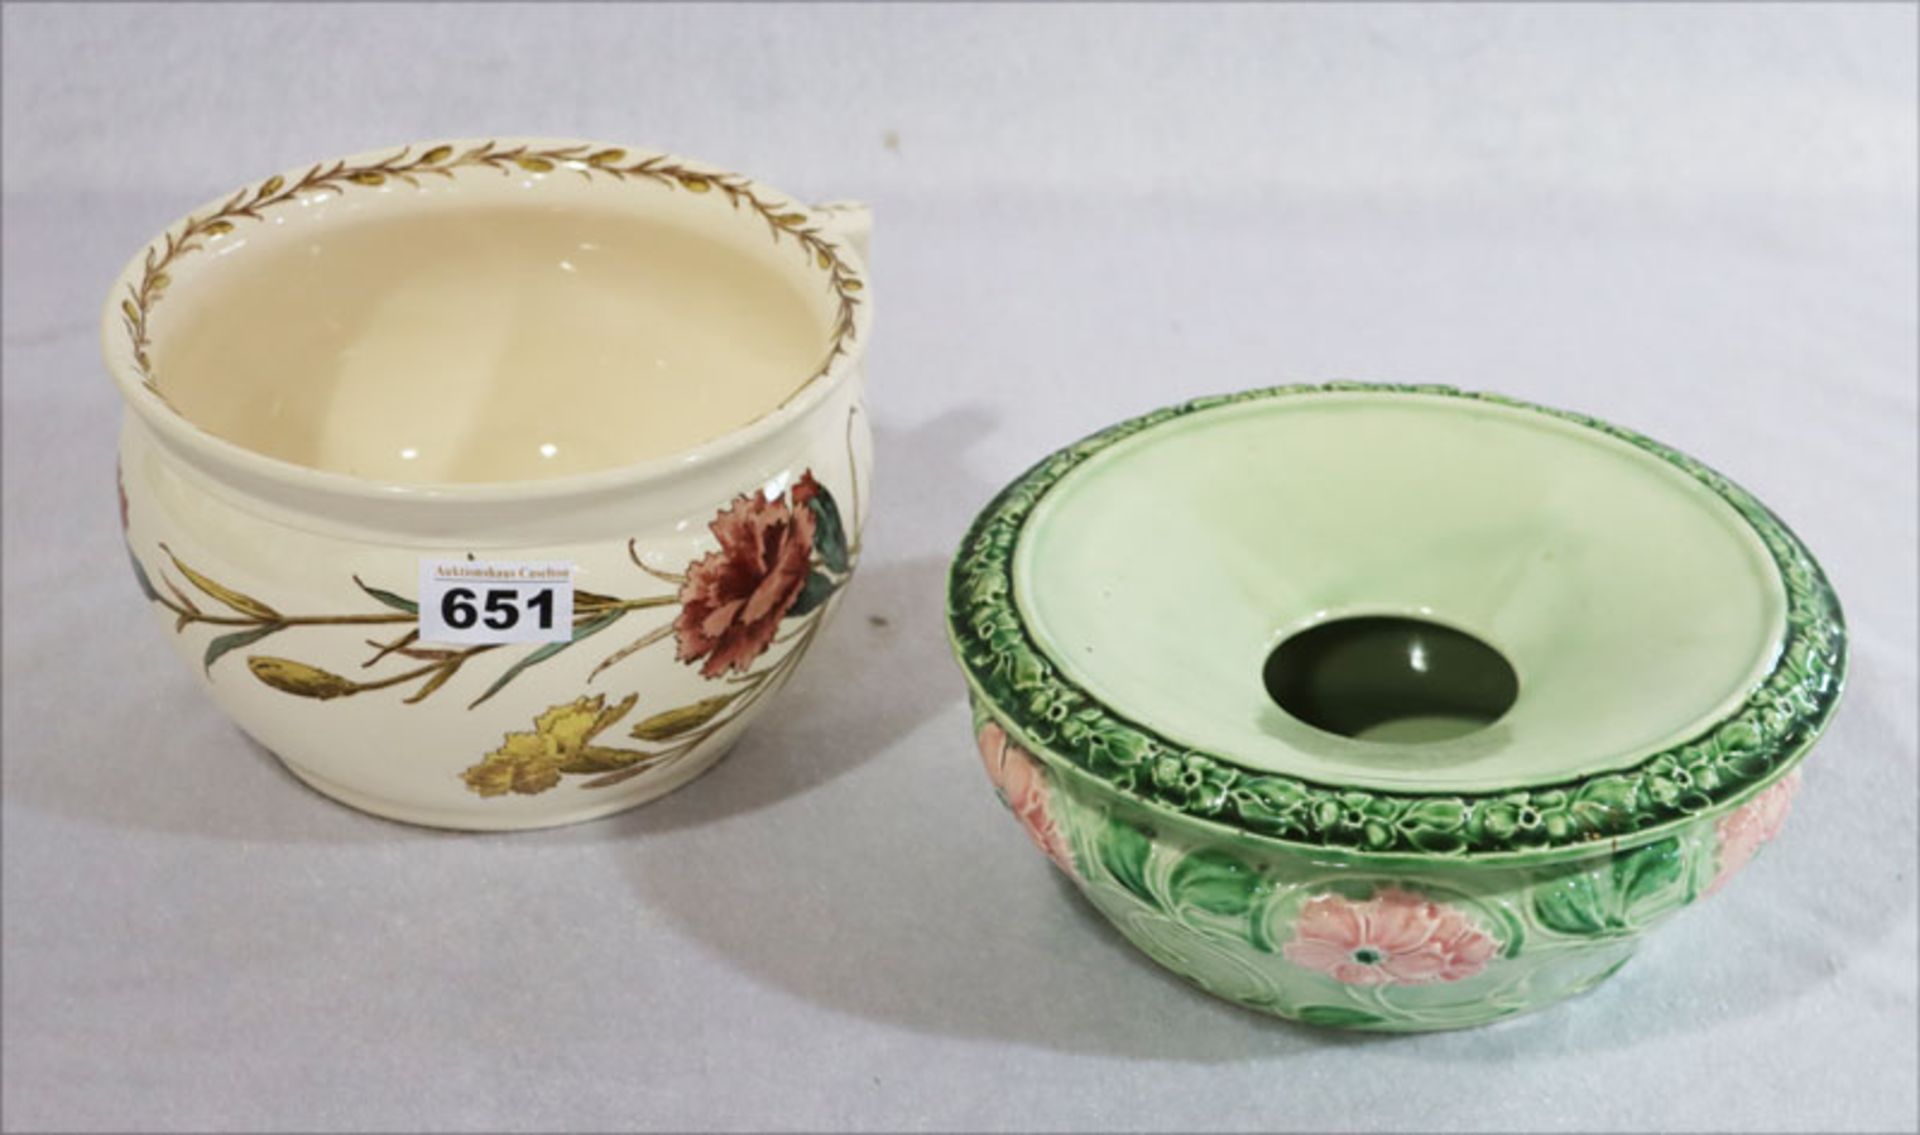 Villleroy & Boch Nachttopf, Dekor Nelke, H 12 cm, D 20 cm, und Keramik Schale mit Einsatz,